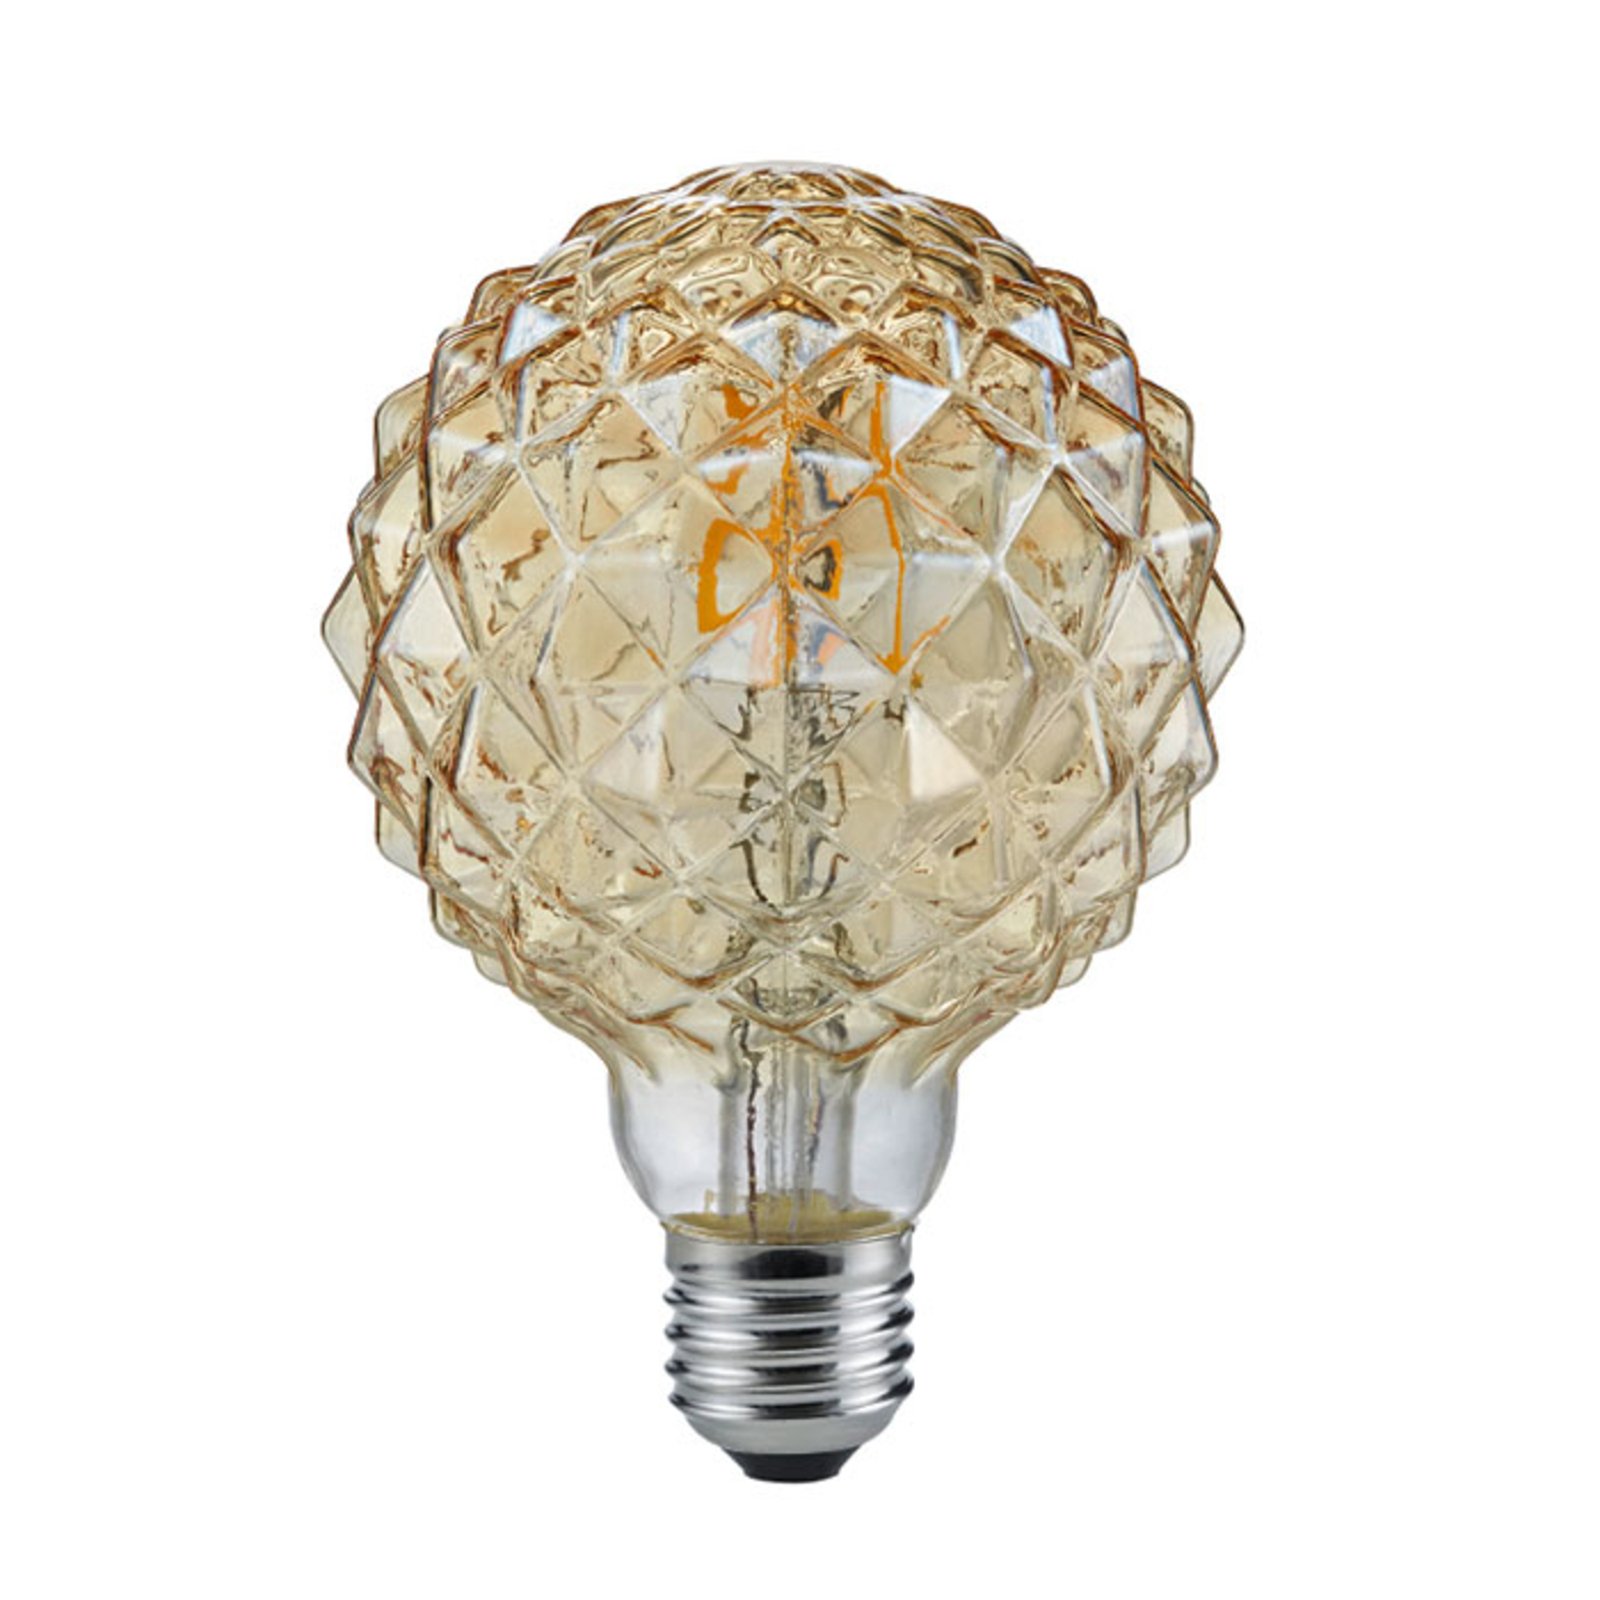 LED globe bulb E27 4 W 2,700 K amber